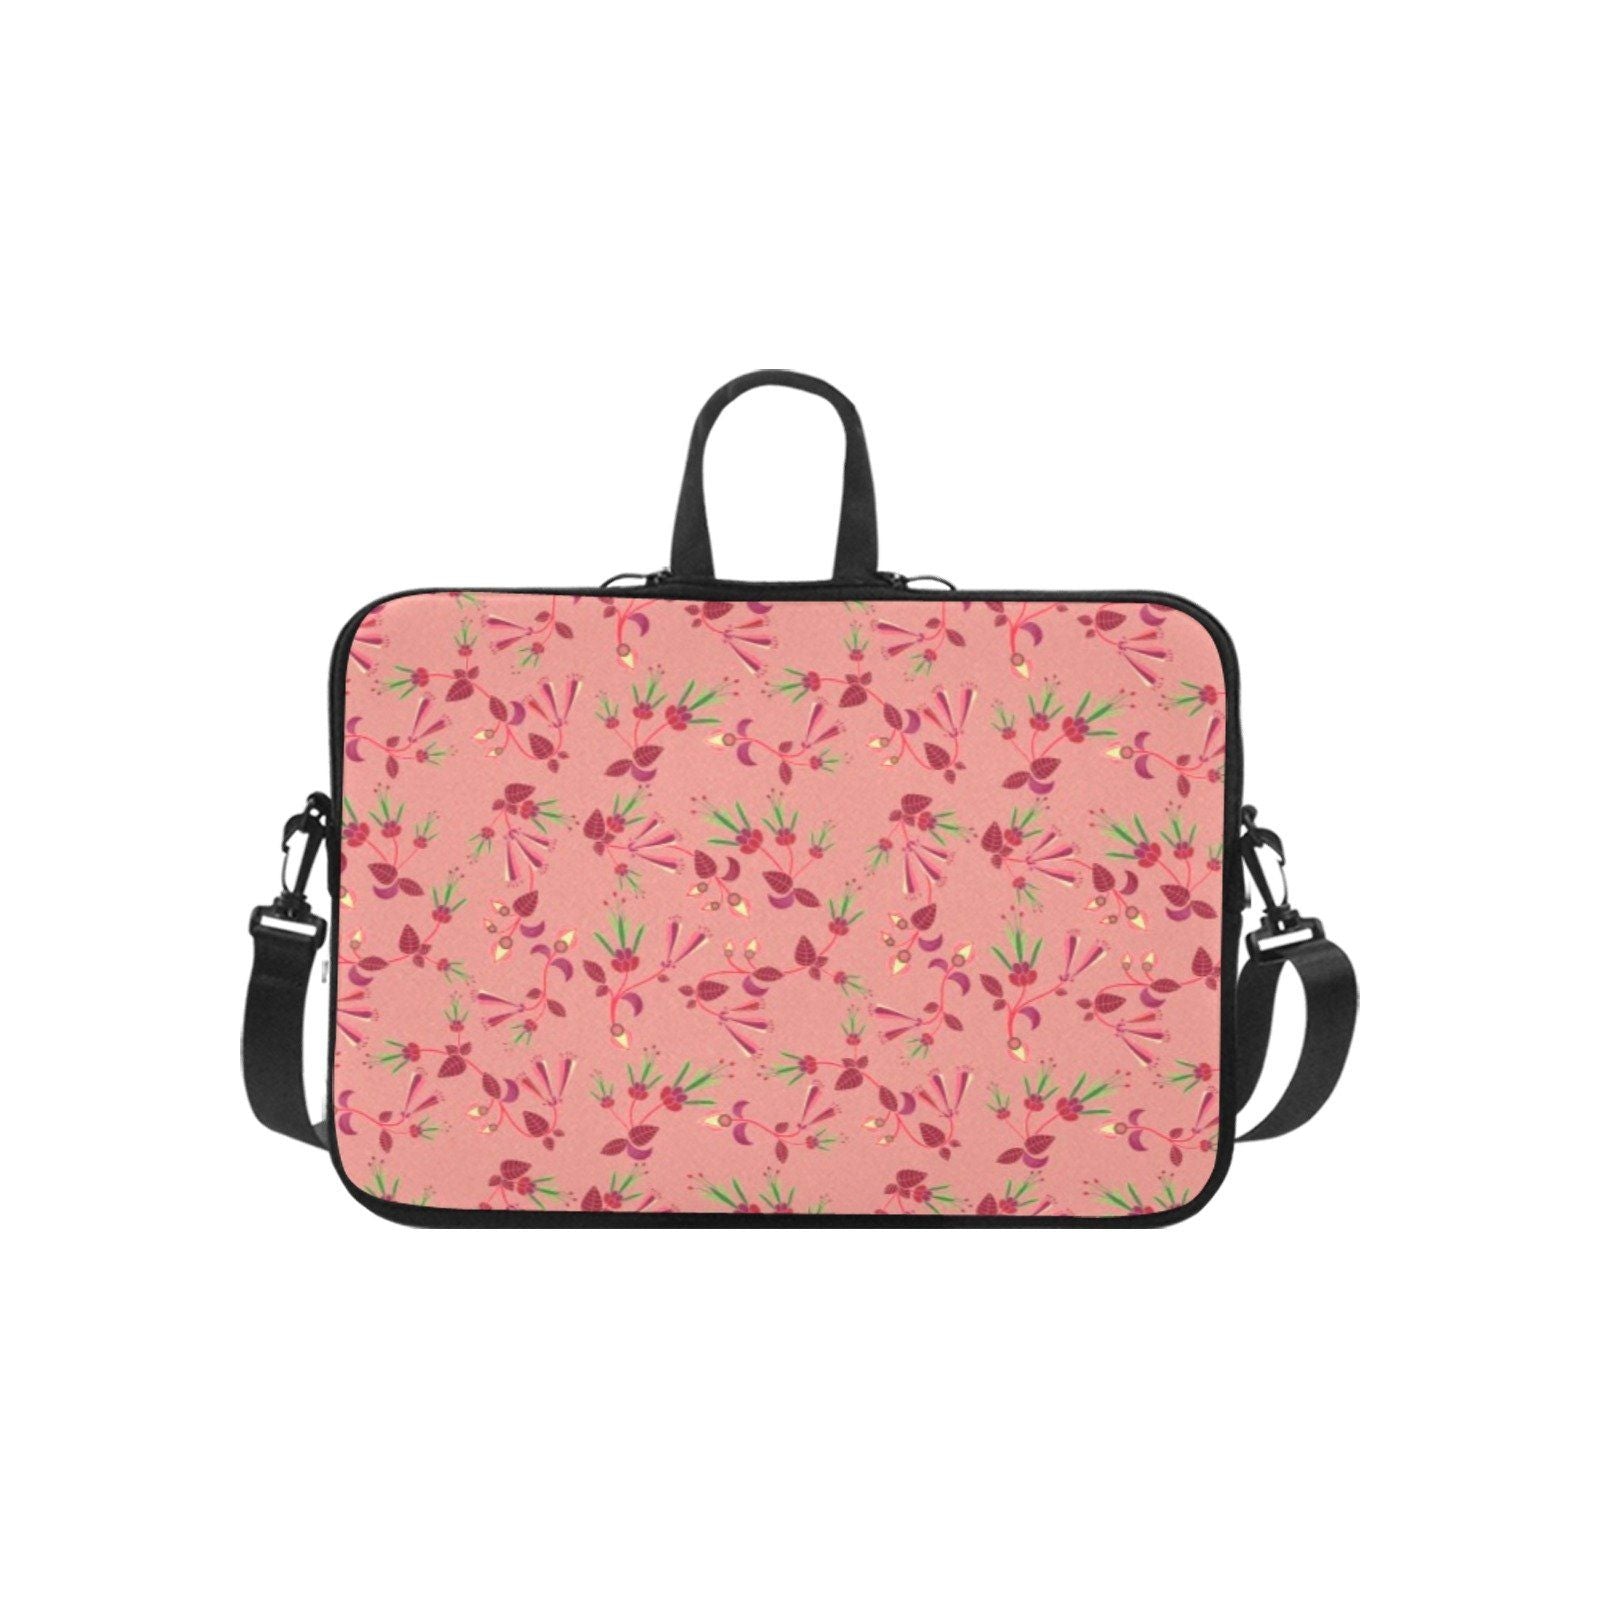 Swift Floral Peach Rouge Remix Laptop Handbags 10" bag e-joyer 